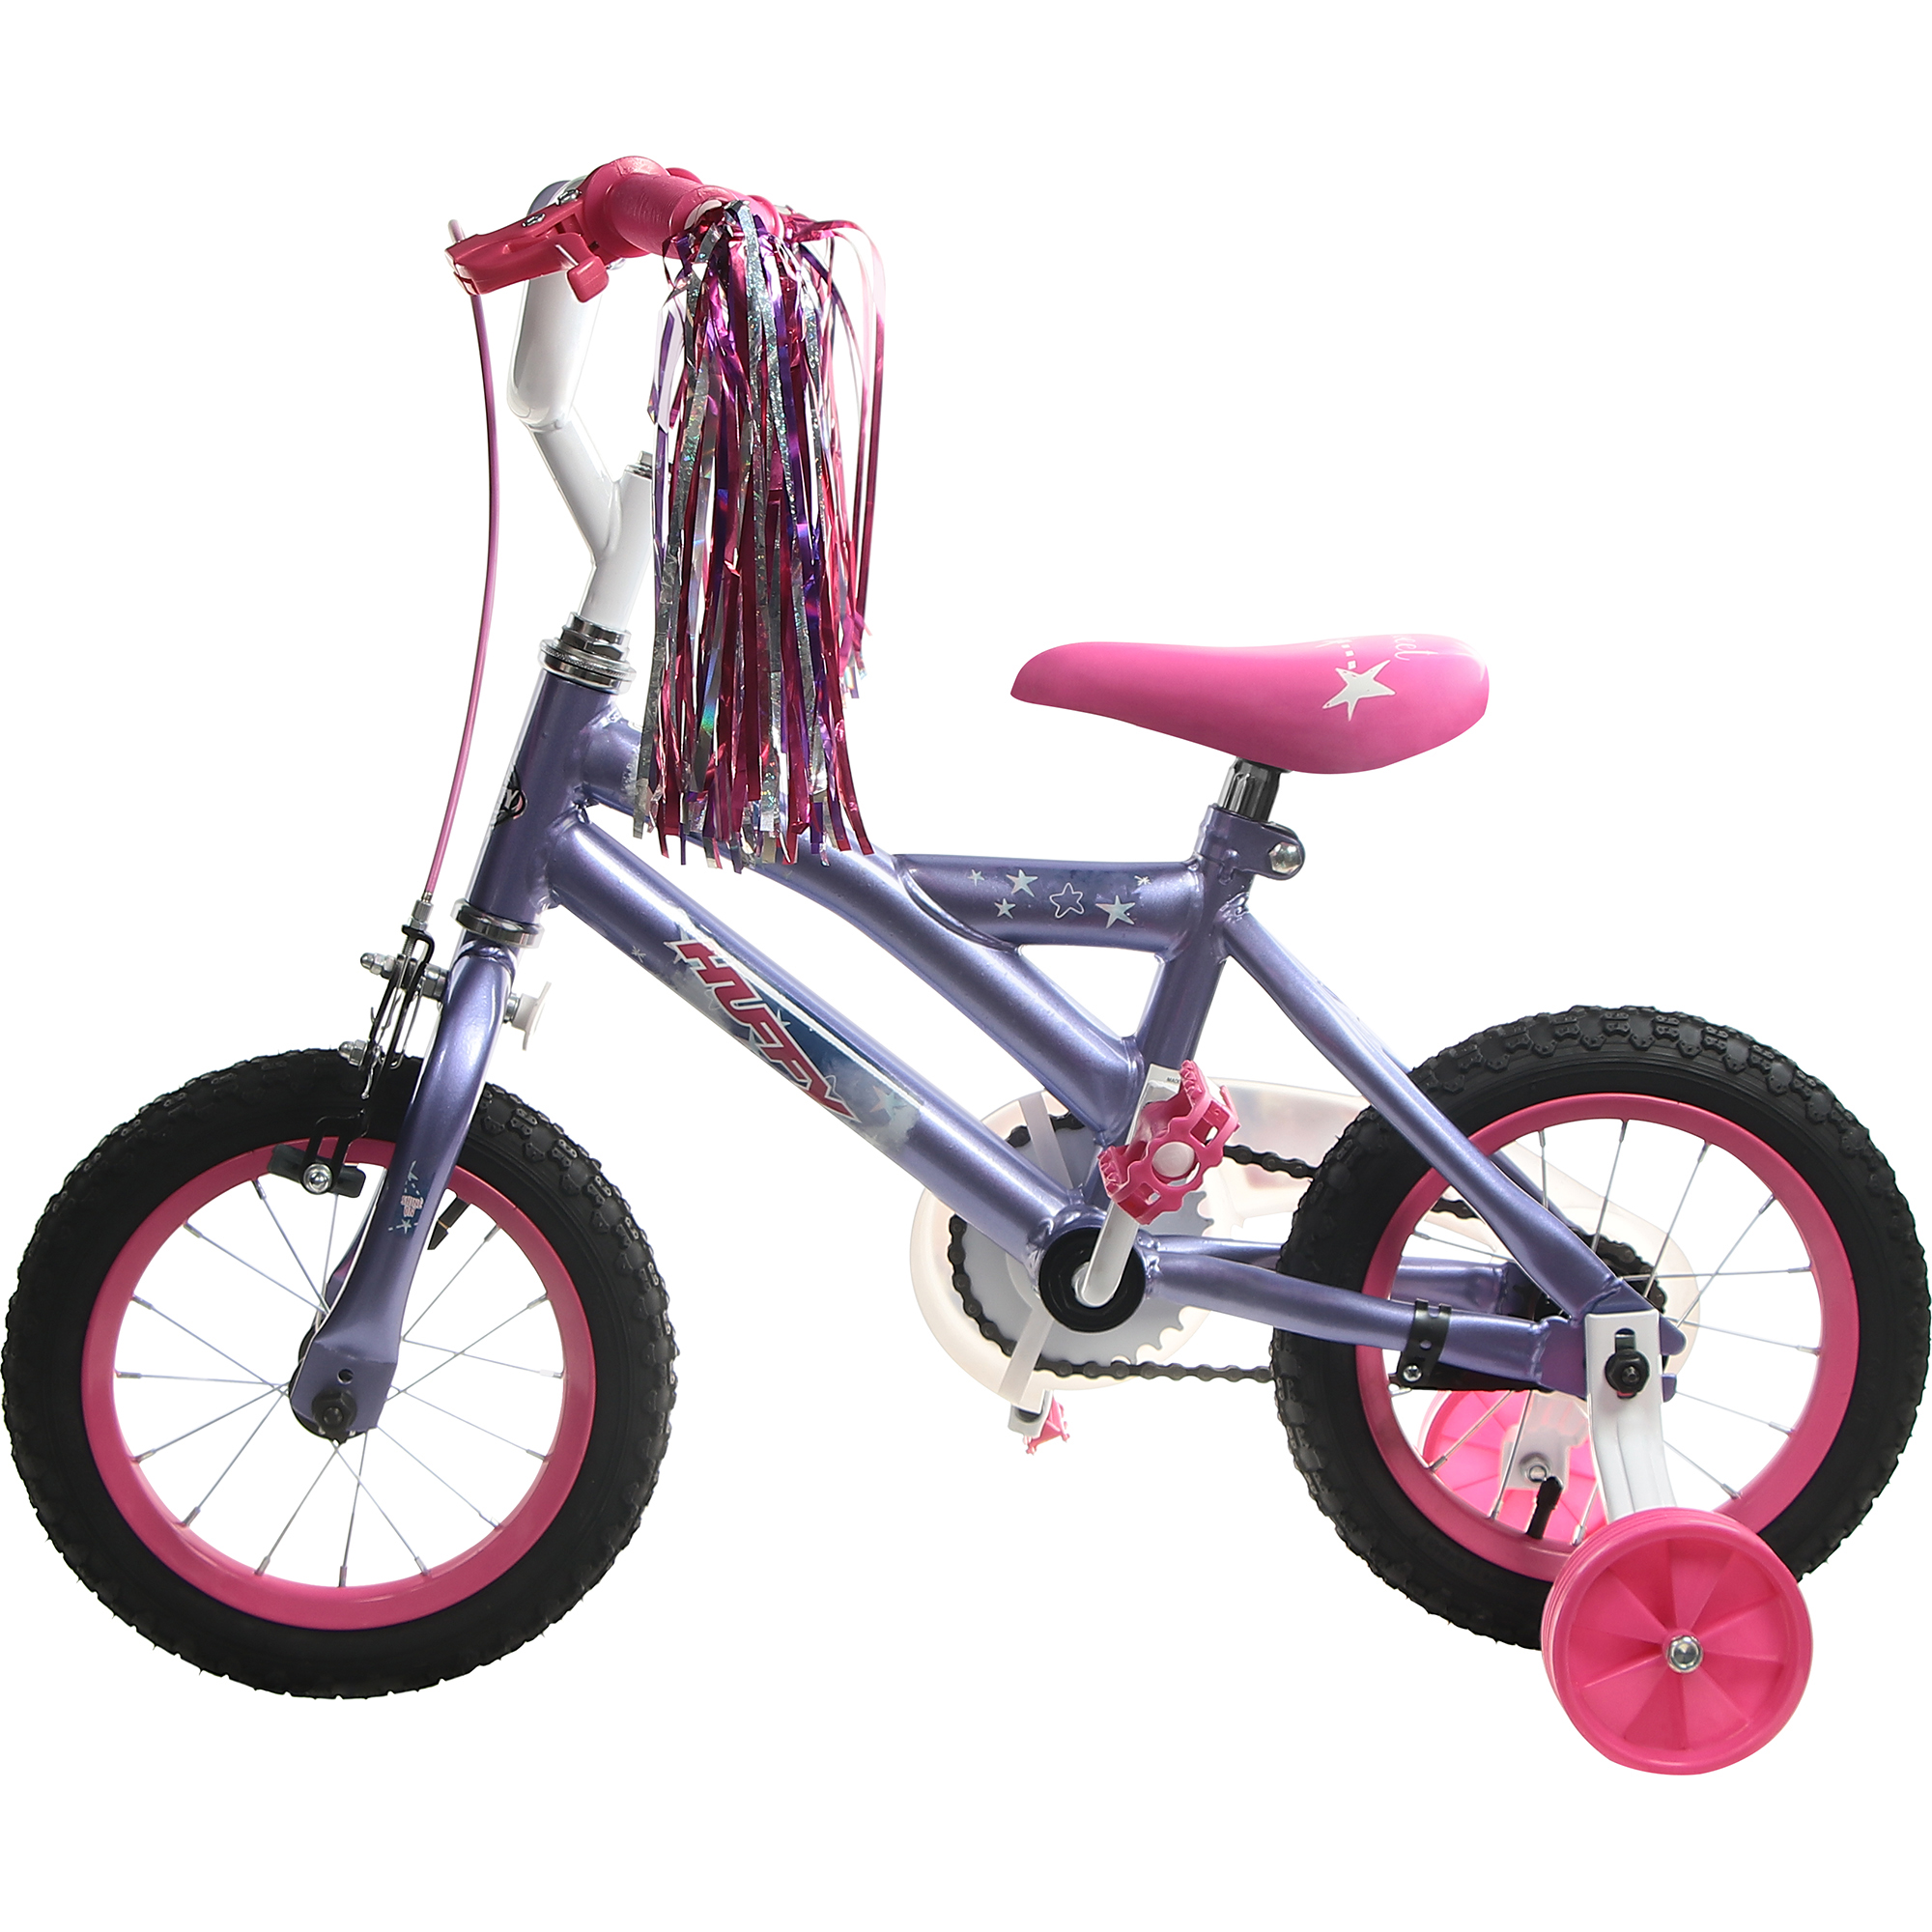 Велосипед детский Huffy So sweet, 12, для девочек